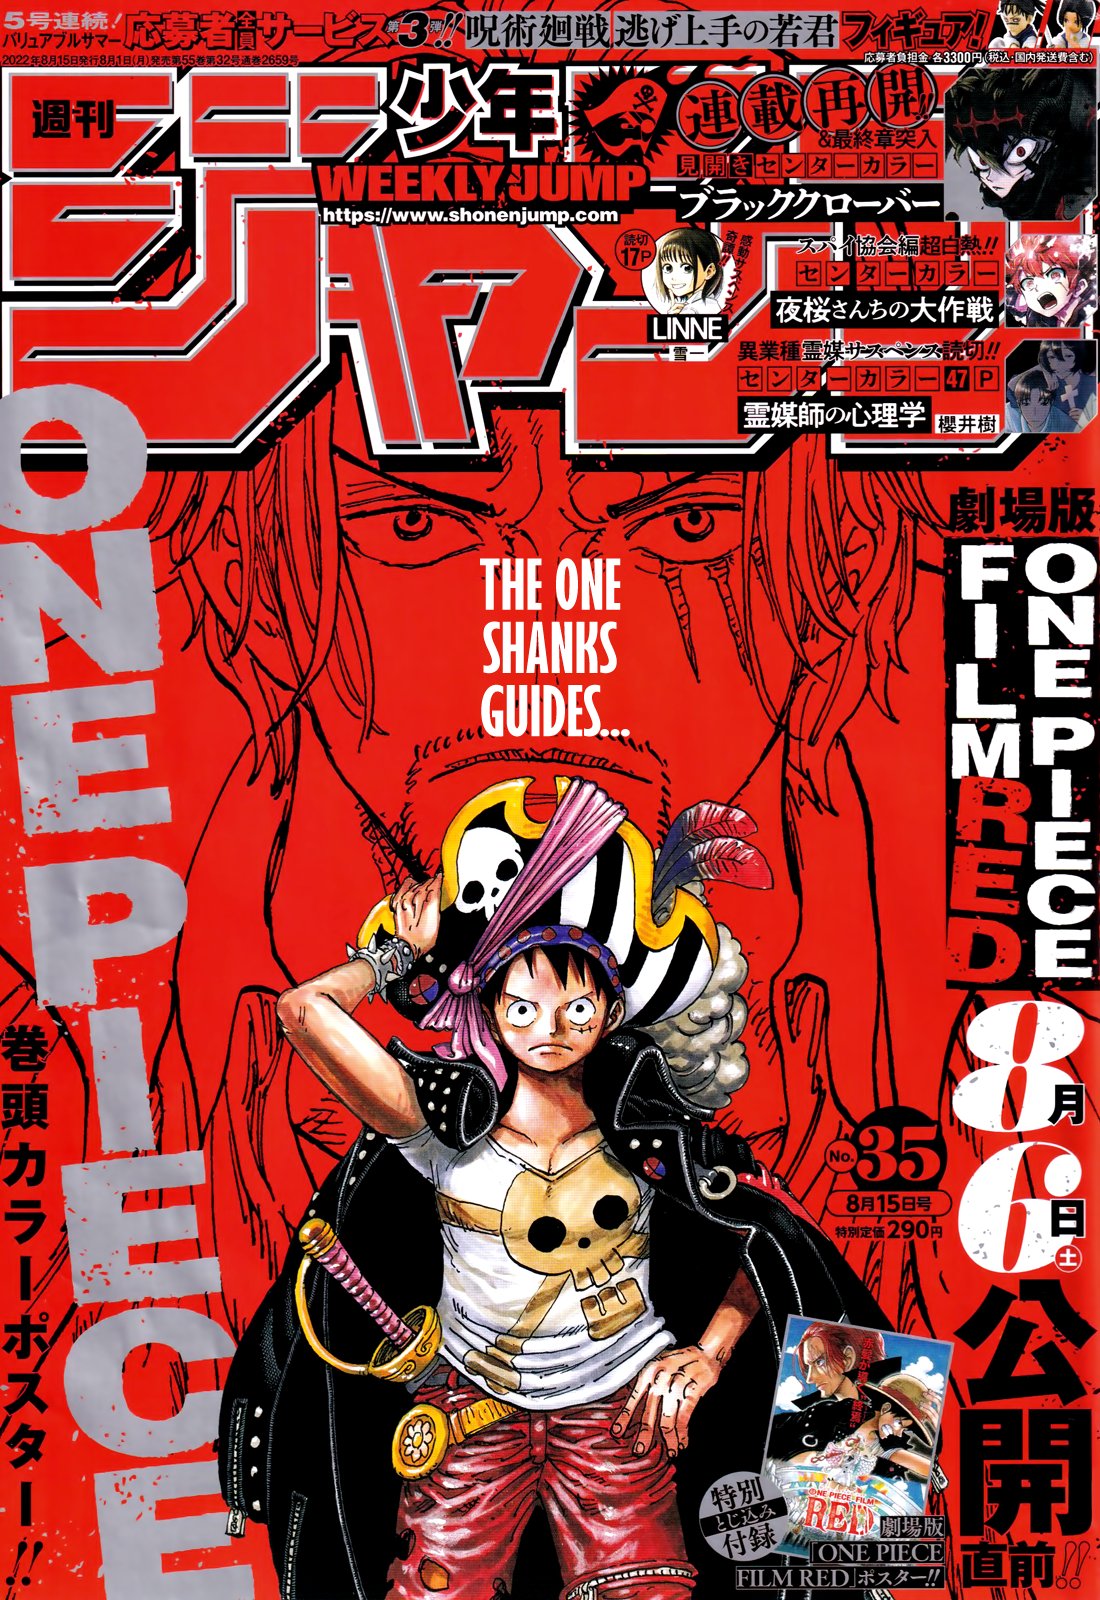 One Piece Stampede Vol. 2 - ISBN:9784088823447